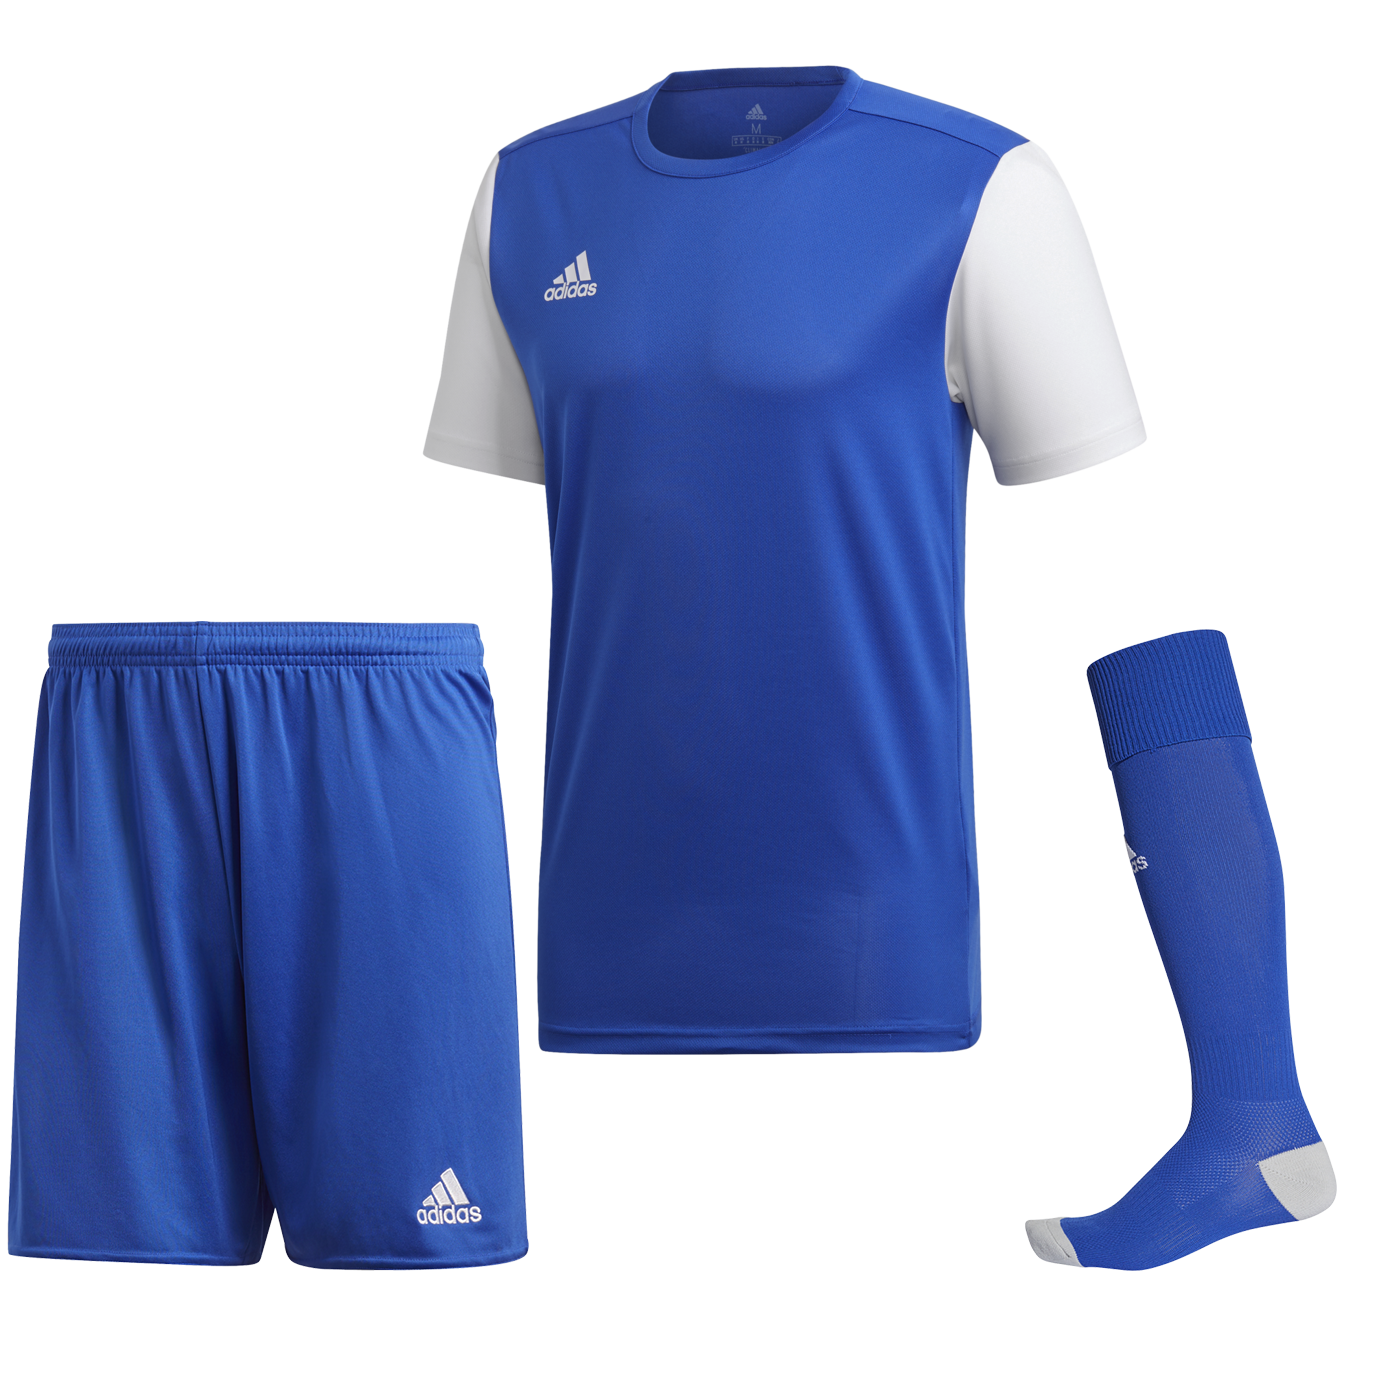 Adidas Estro 19 modrá/bílá UK XL Pánské